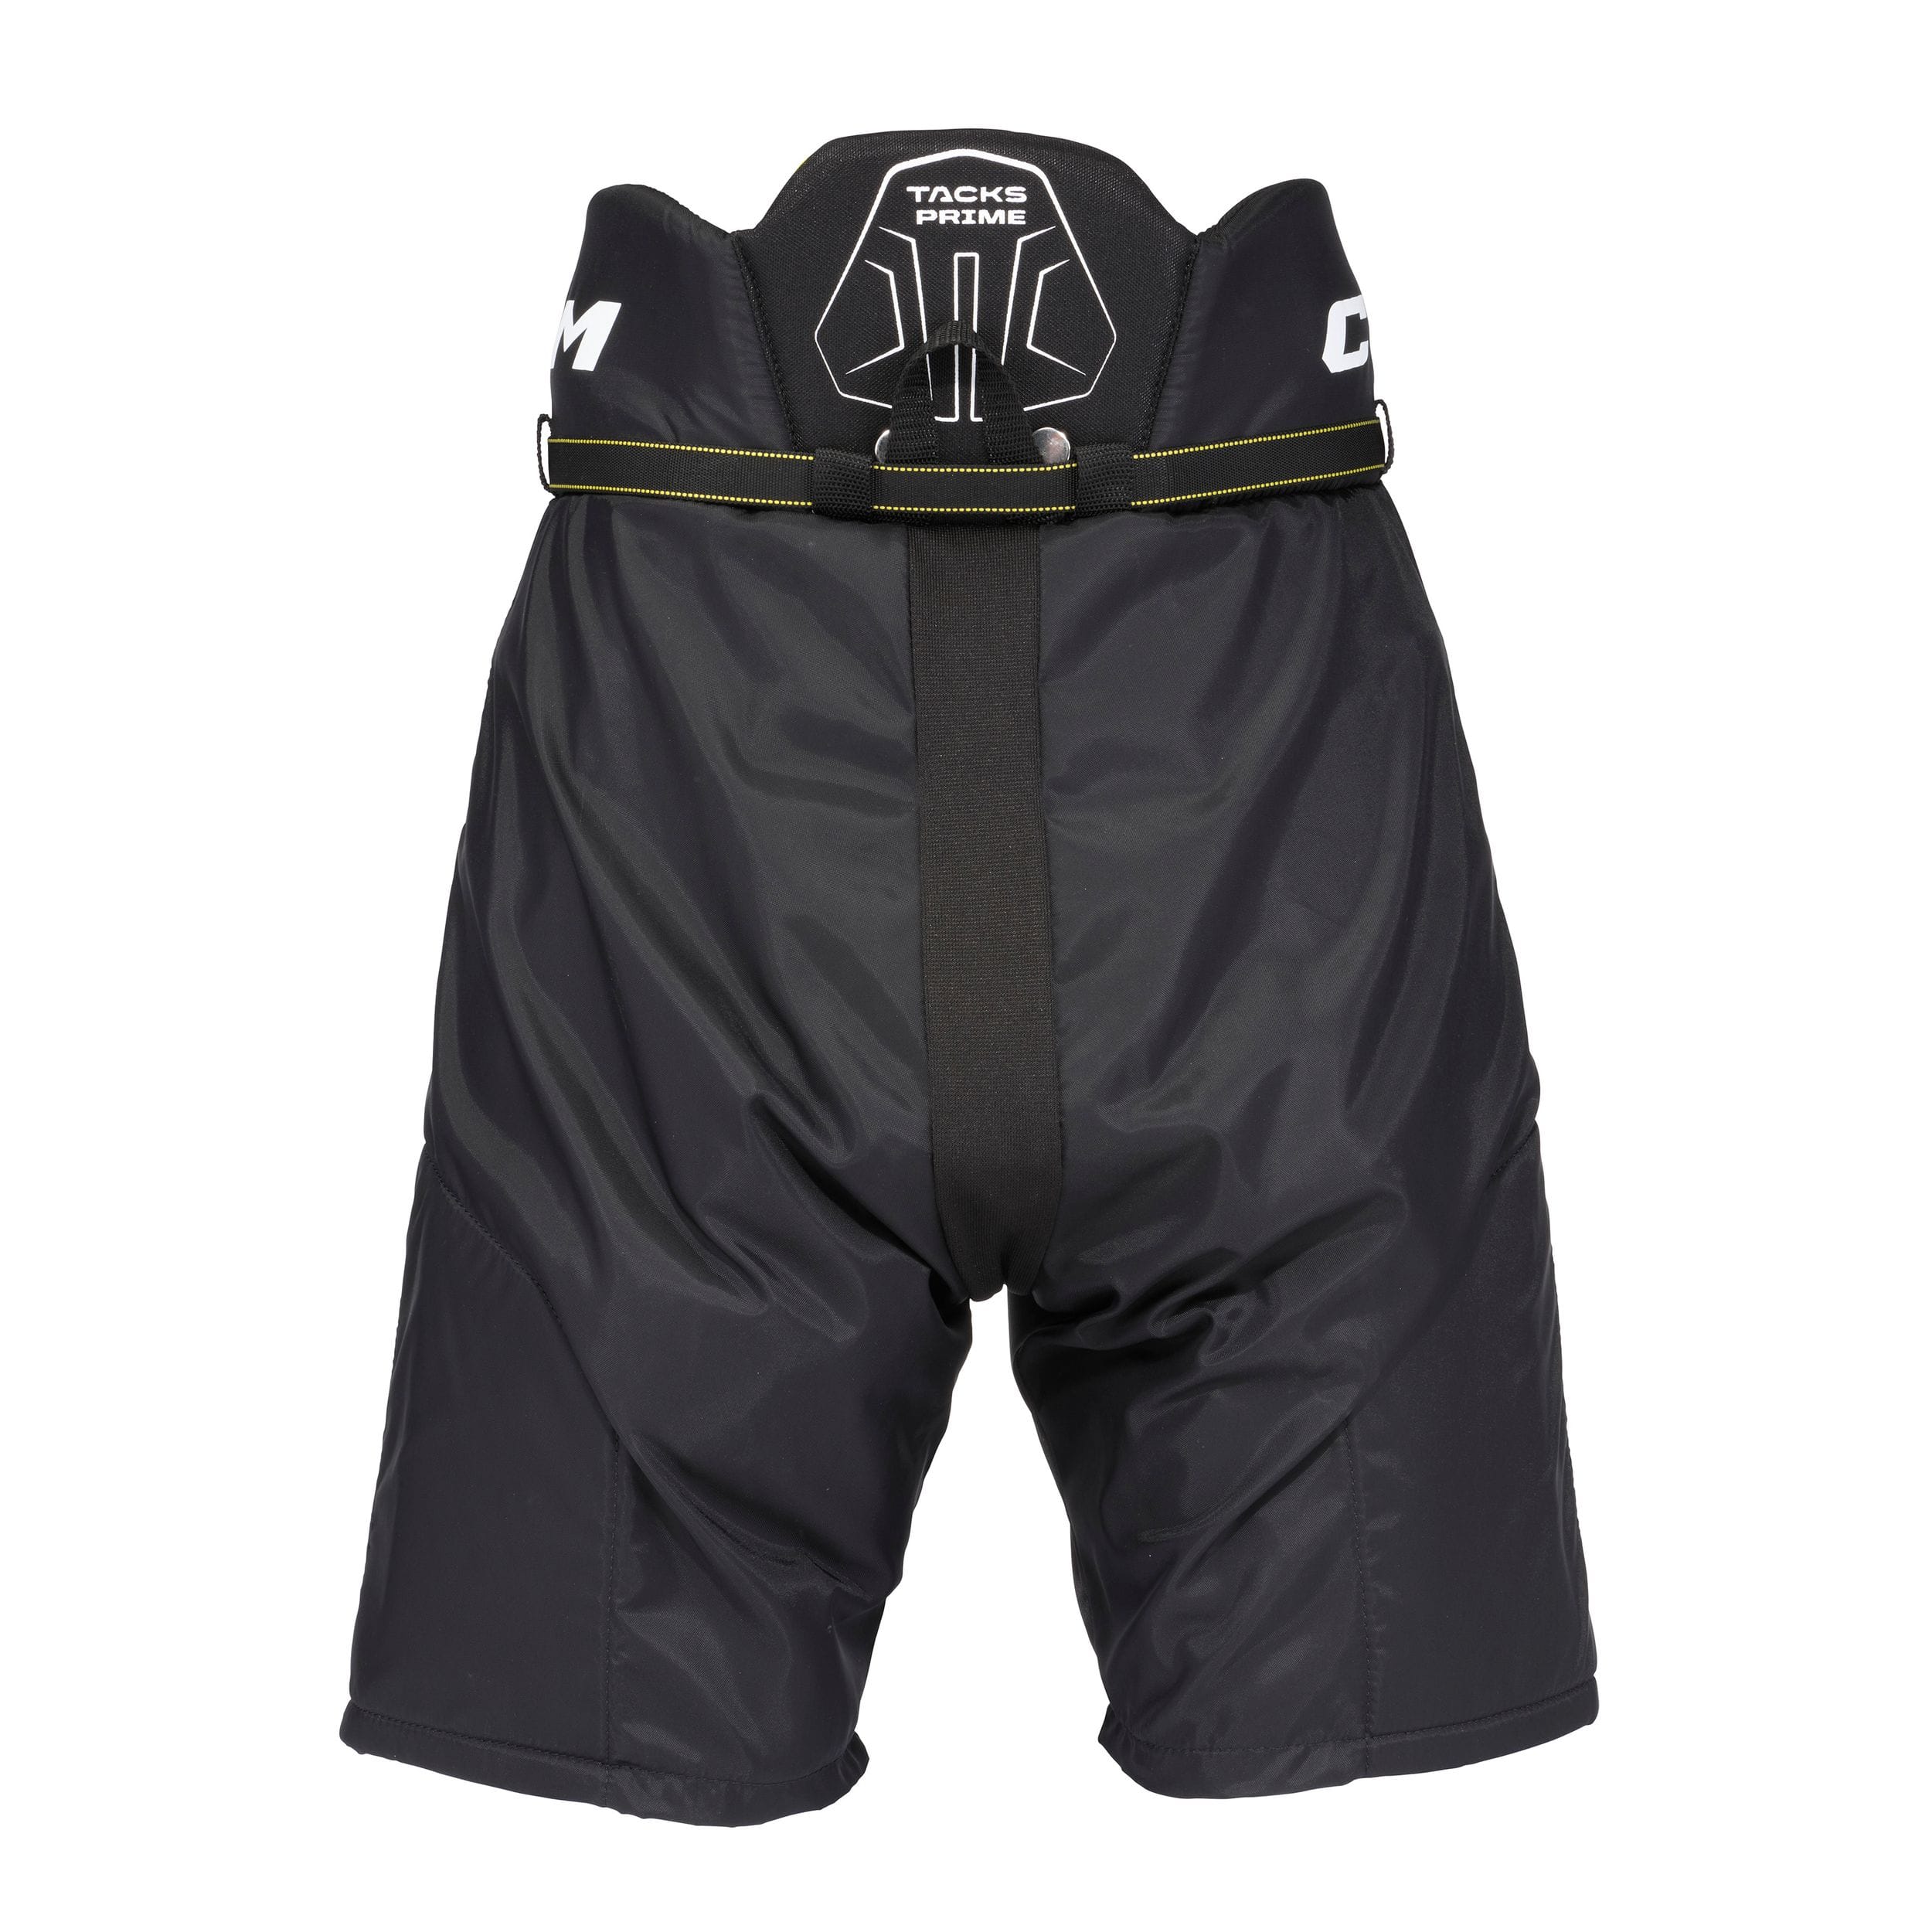 1 GK Academy Kids Padded Base Layer Shorts - FN Teamwear